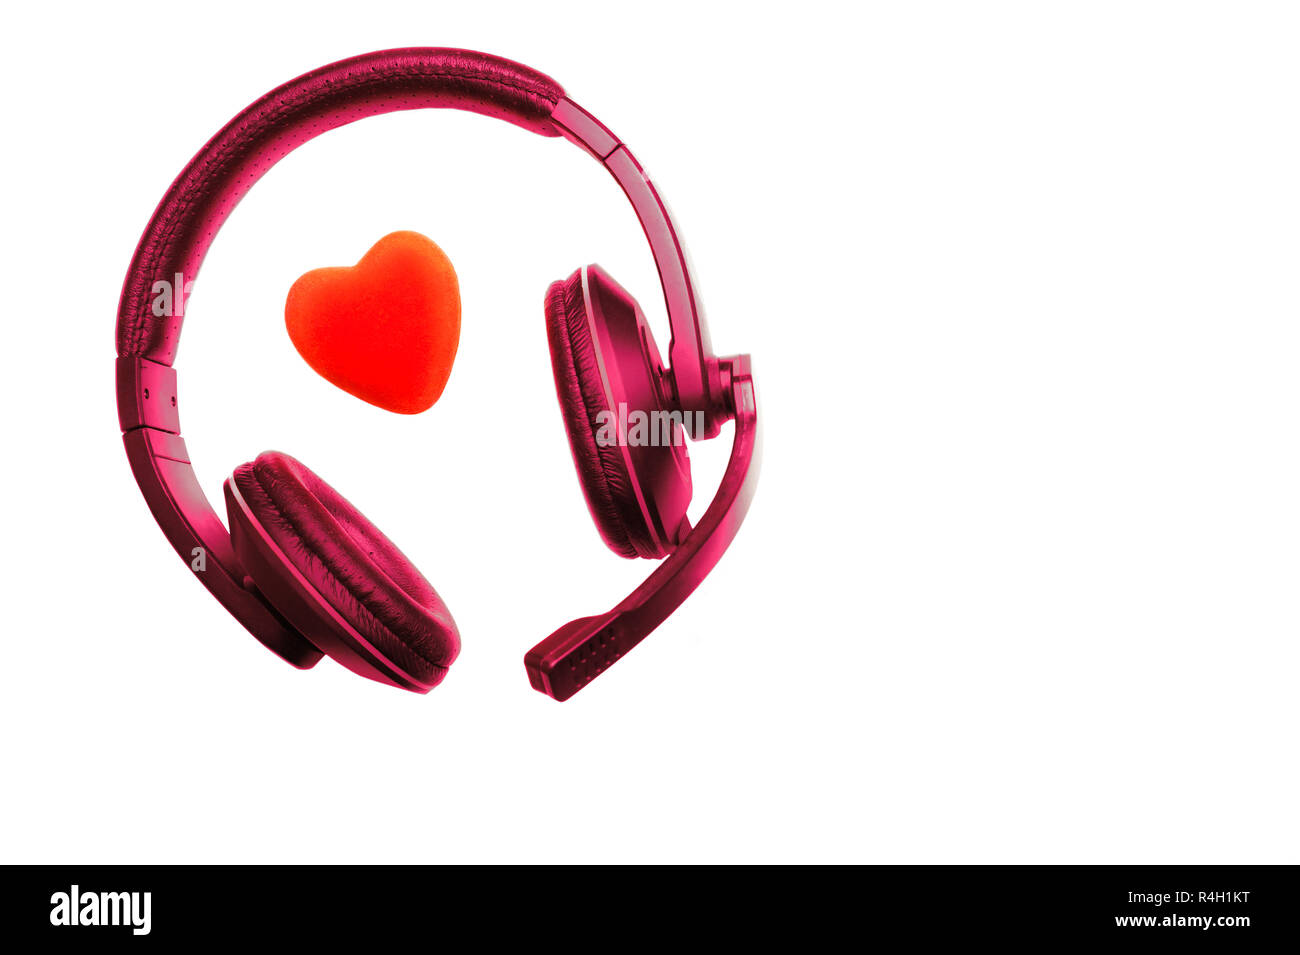 Colore rosso viola cuffie, cuffie con microfono e cuore rosso isolato su sfondo bianco. Call Center per il supporto tecnico, amore, il giorno di San Valentino, medi Foto Stock